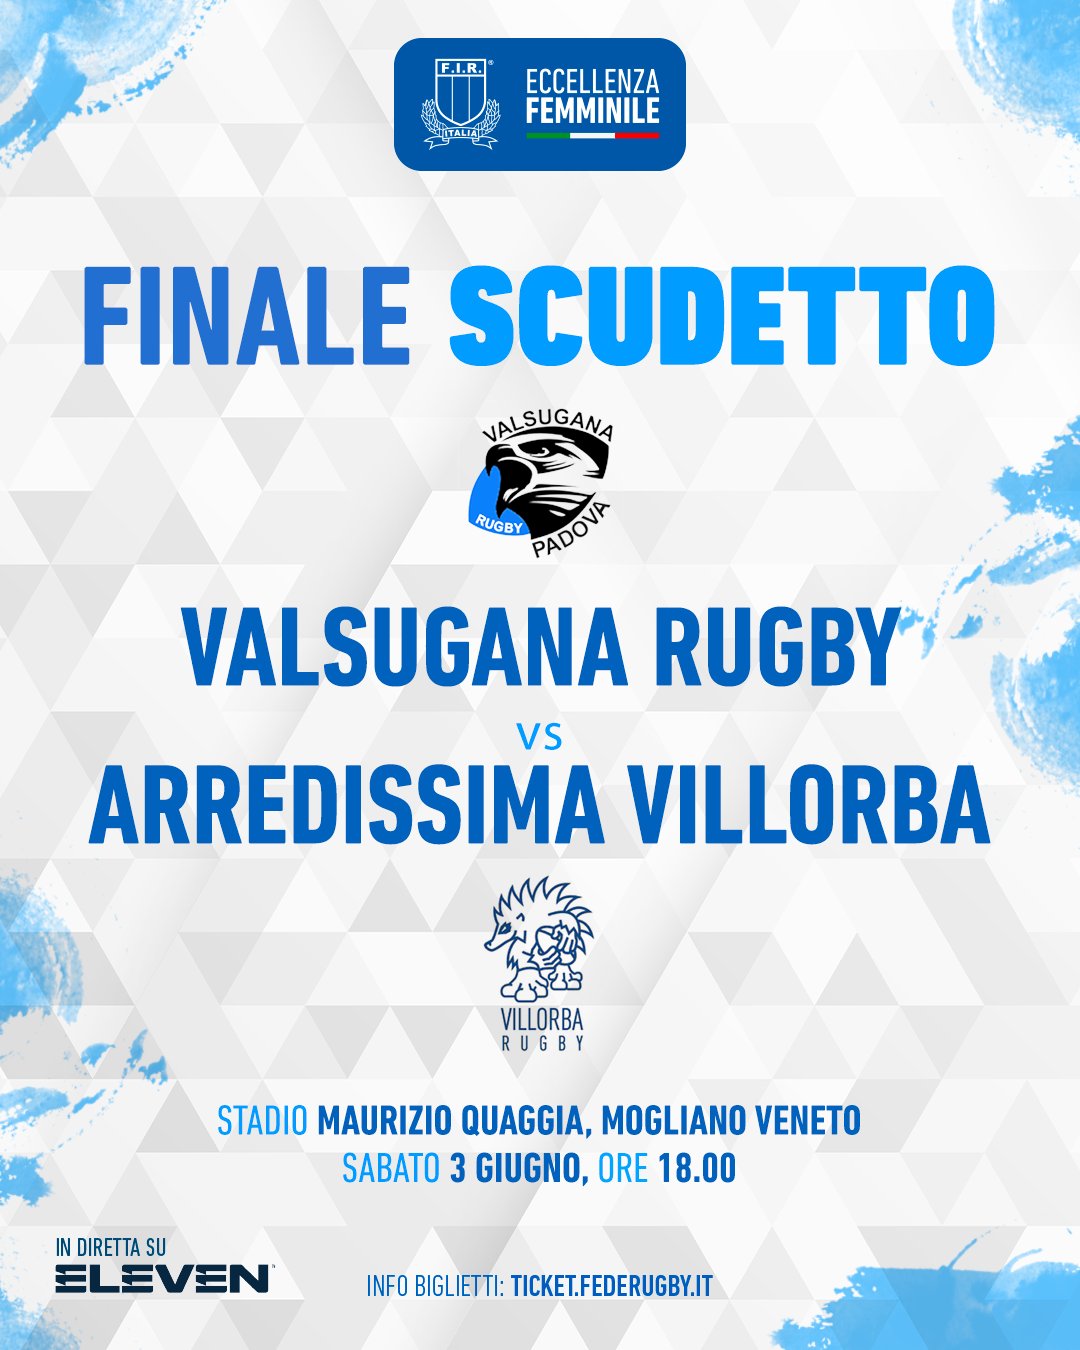 Italrugby on X: "🏆 Eccellenza femminile La finale scudetto sarà Valsugana  Rugby Padova v Villorba Rugby, sabato prossimo a Mogliano Veneto 👏  📍Stadio Maurizio Quaggia 📅 Sabato 3 giugno ⏱ Ore 18